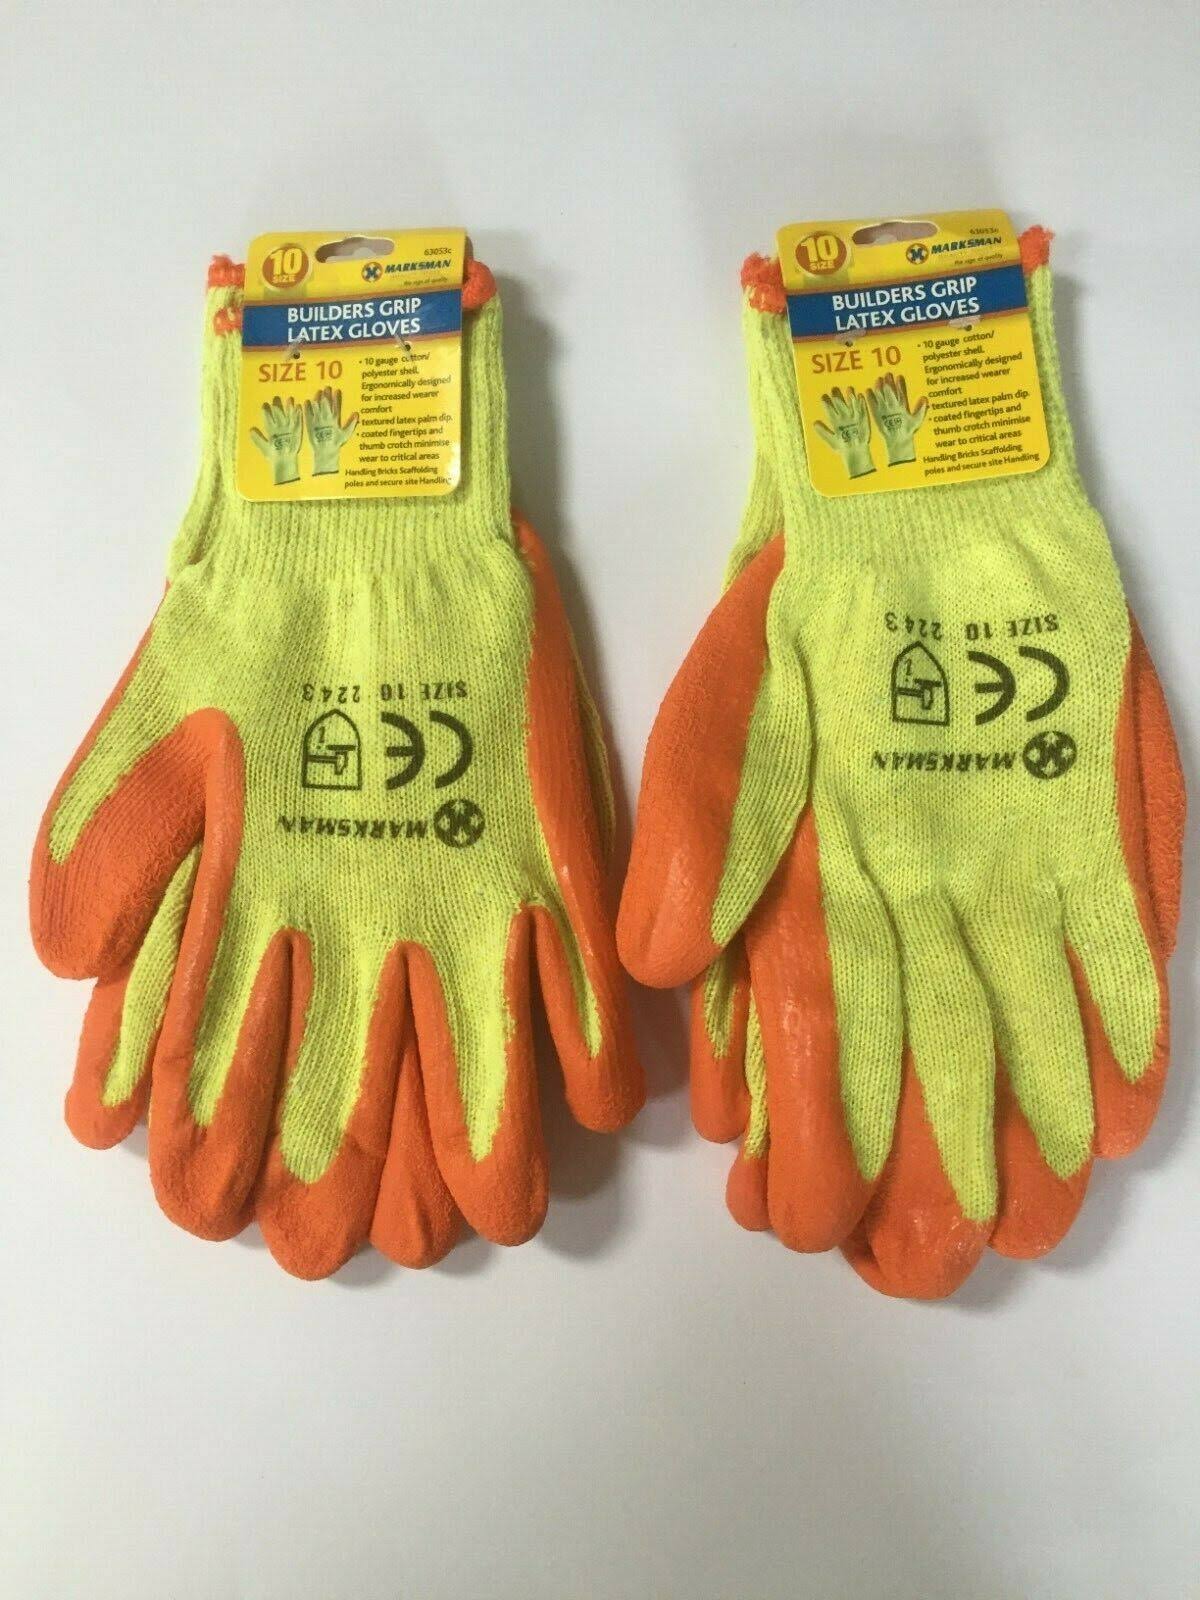 Marksman Builders Grip Latex Gloves